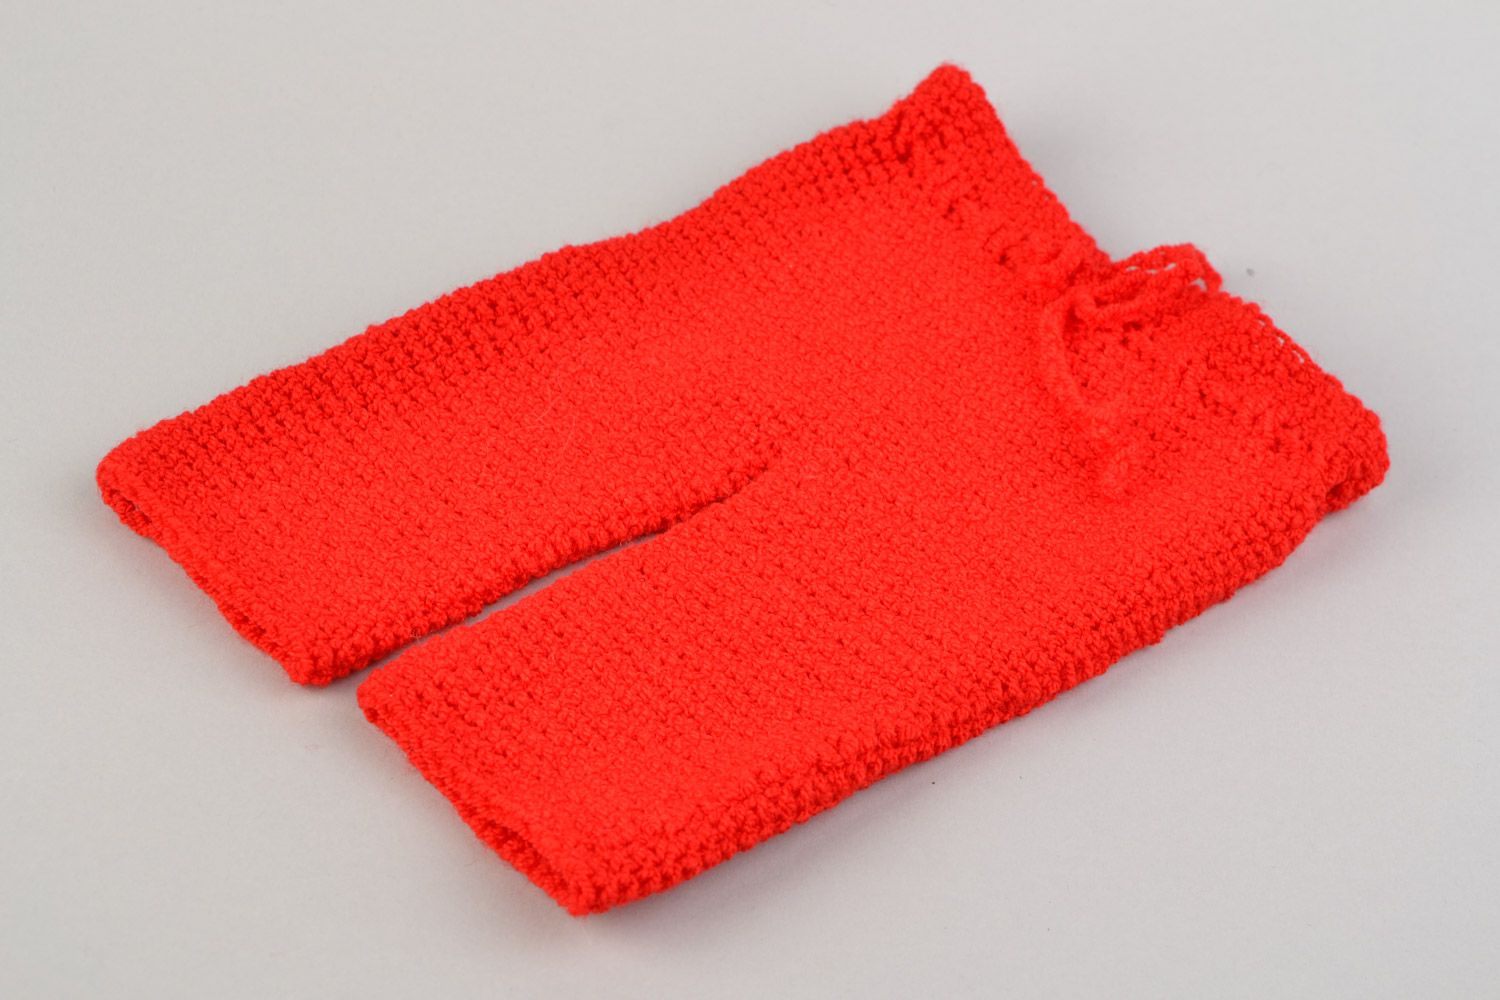 Красные штанишки для малышей вязаные крючком из акрила ручной работы фото 2